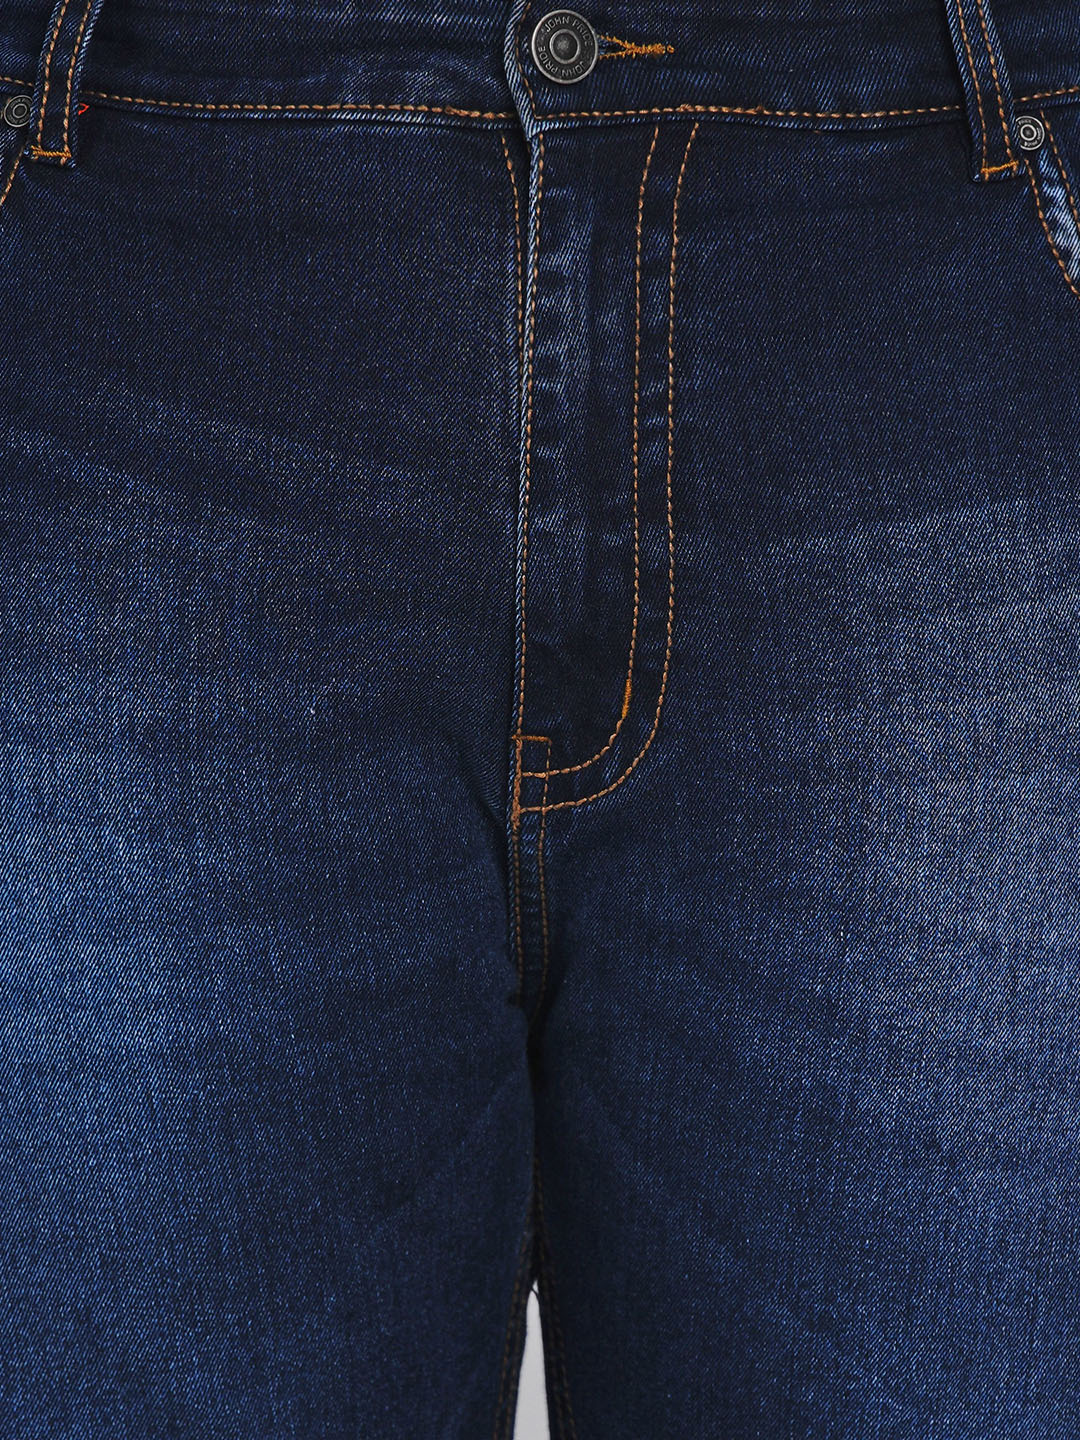 bottomwear/jeans/JPJ2517/jpj2517-2.jpg